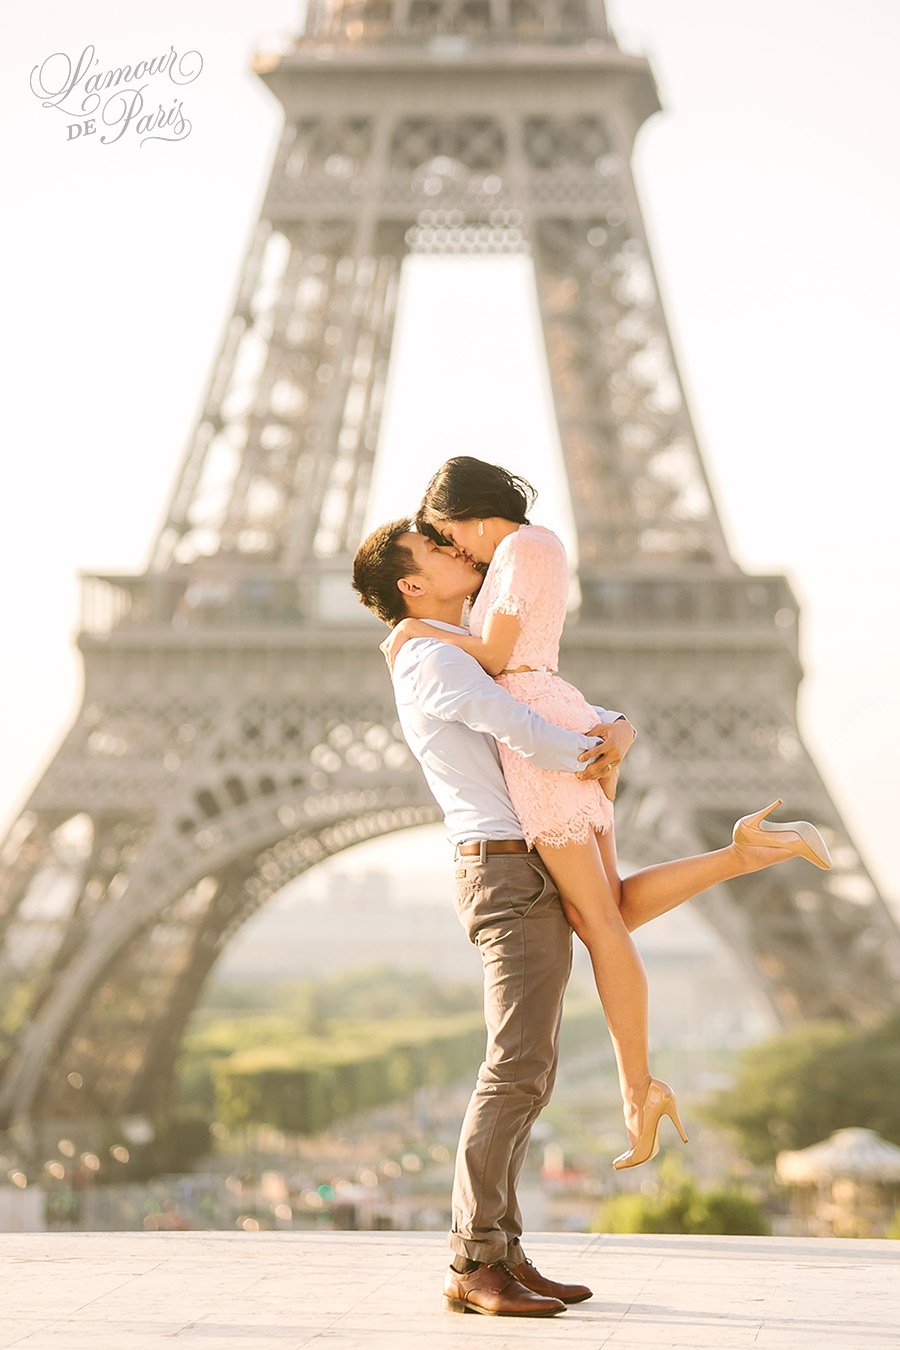 Париж романтическая прогулка